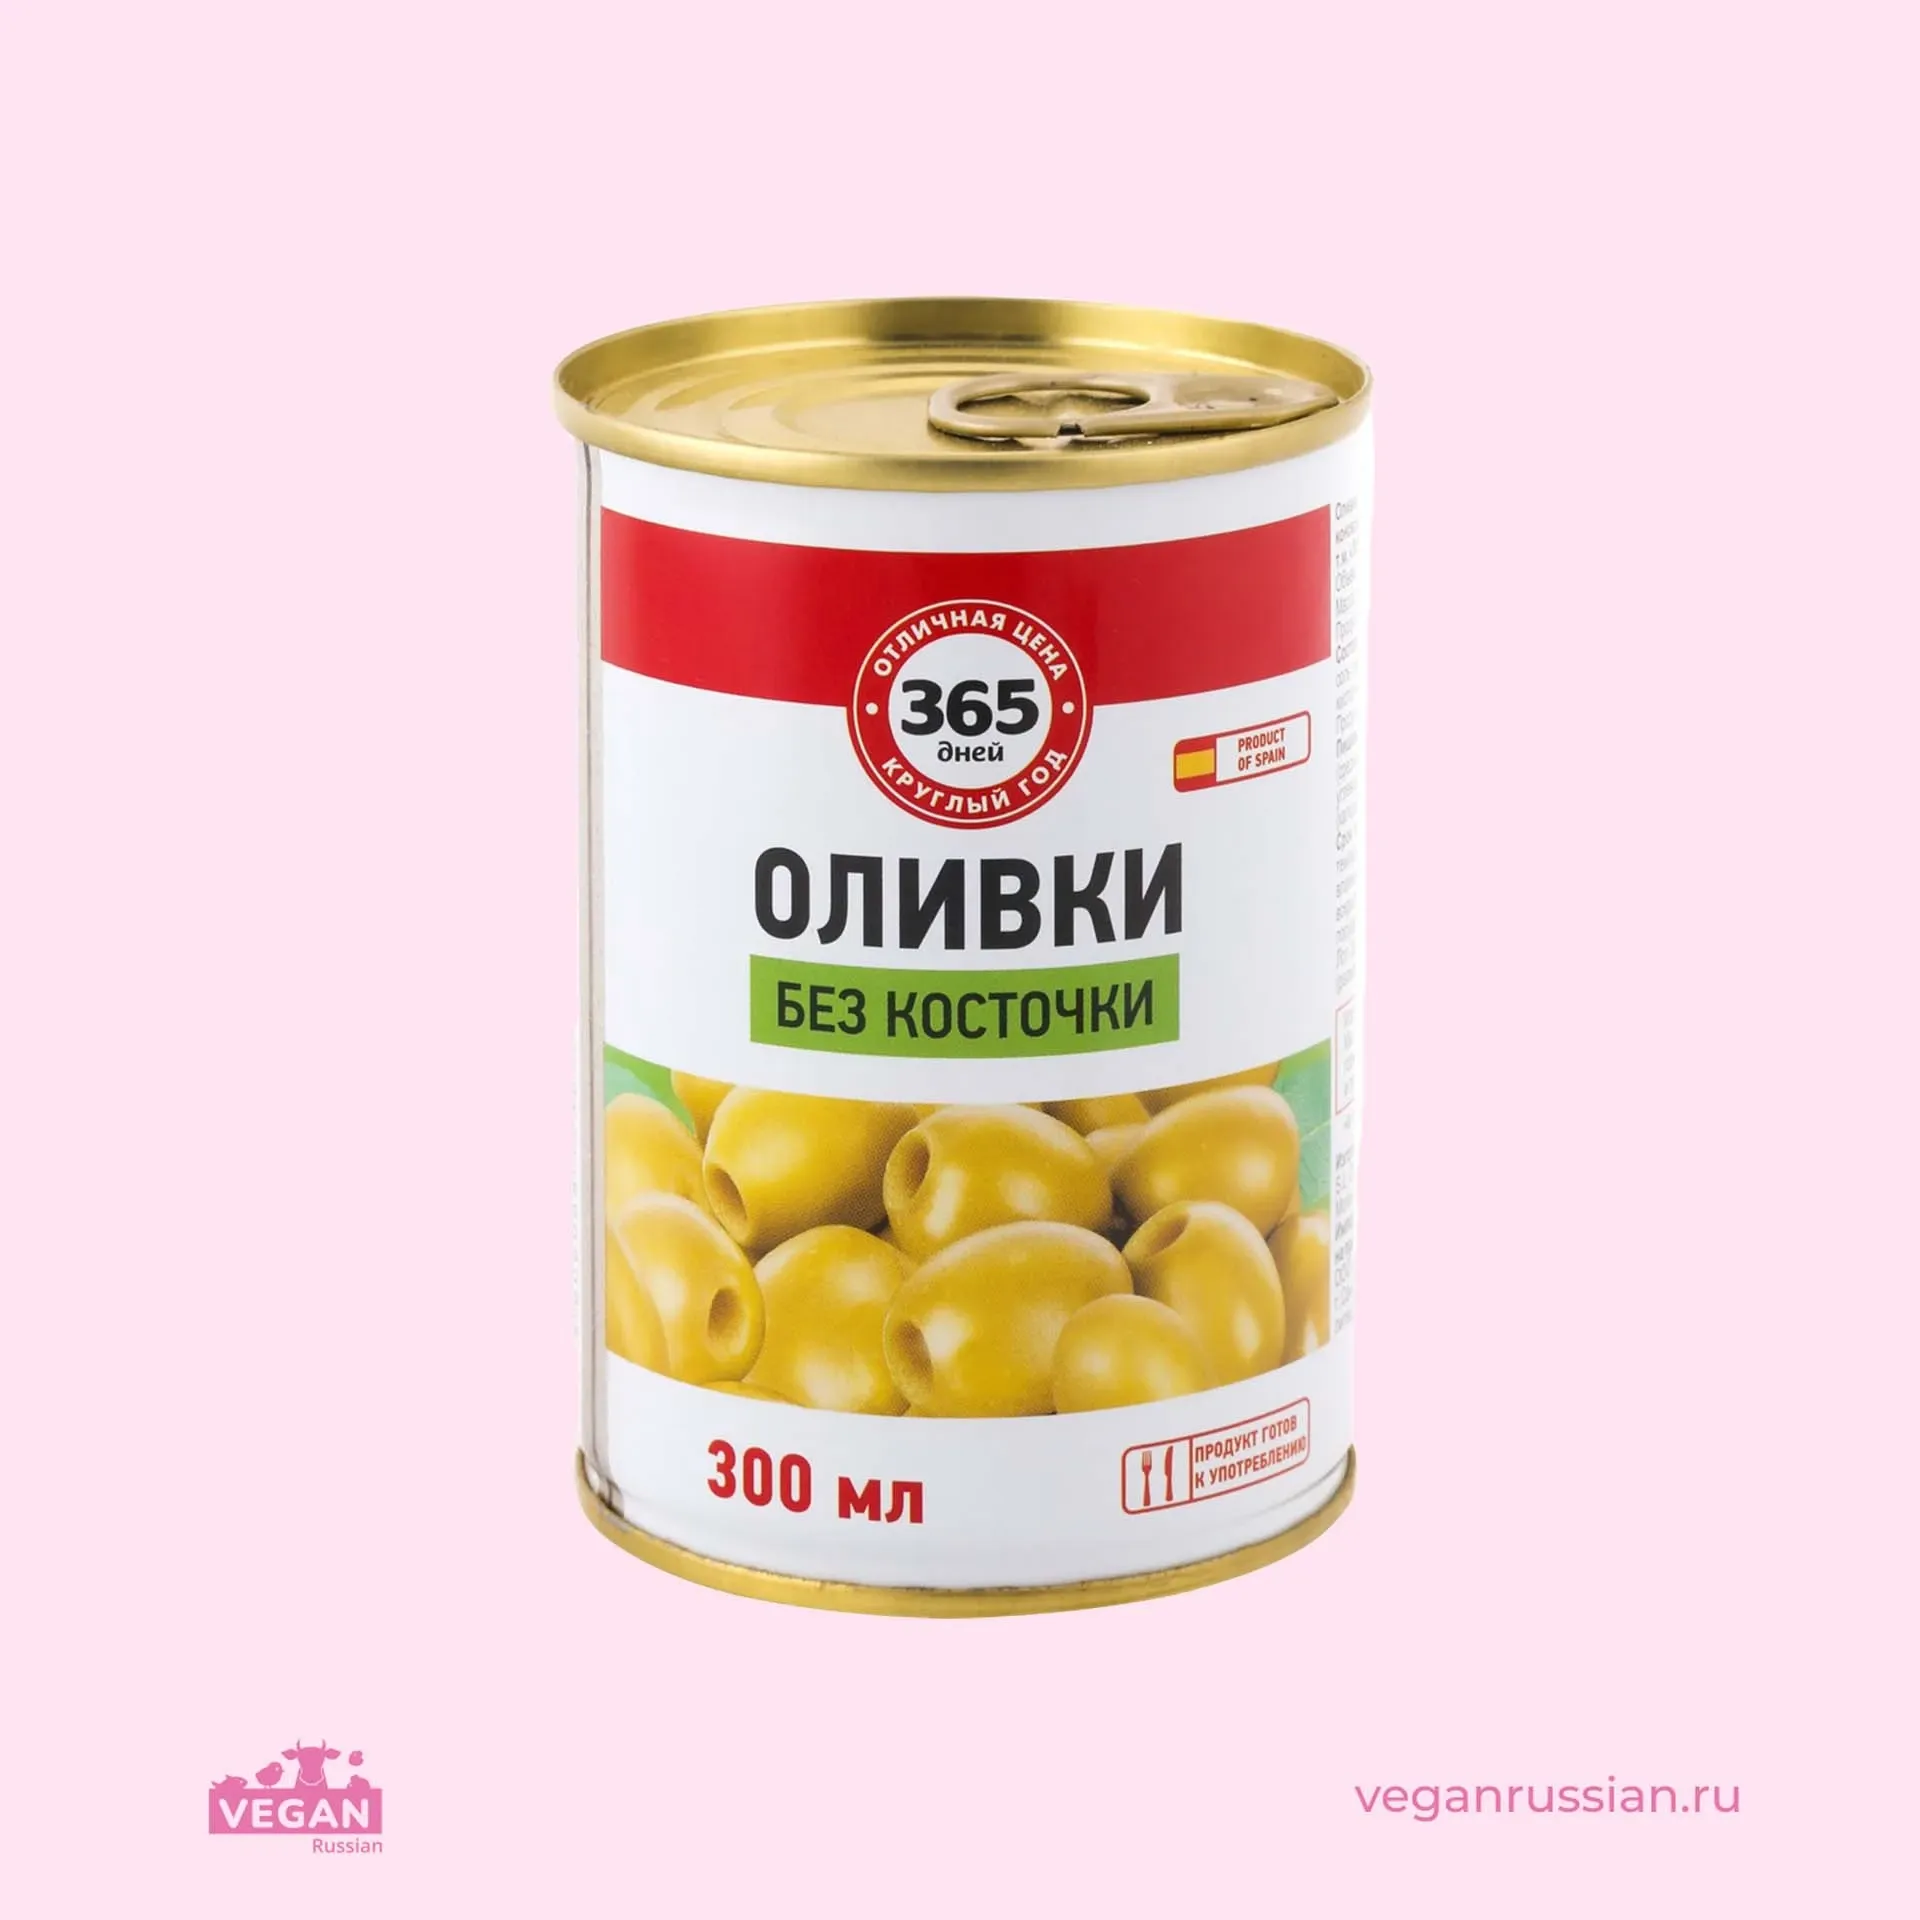 Оливки без косточки зеленые 365 ДНЕЙ 300 мл